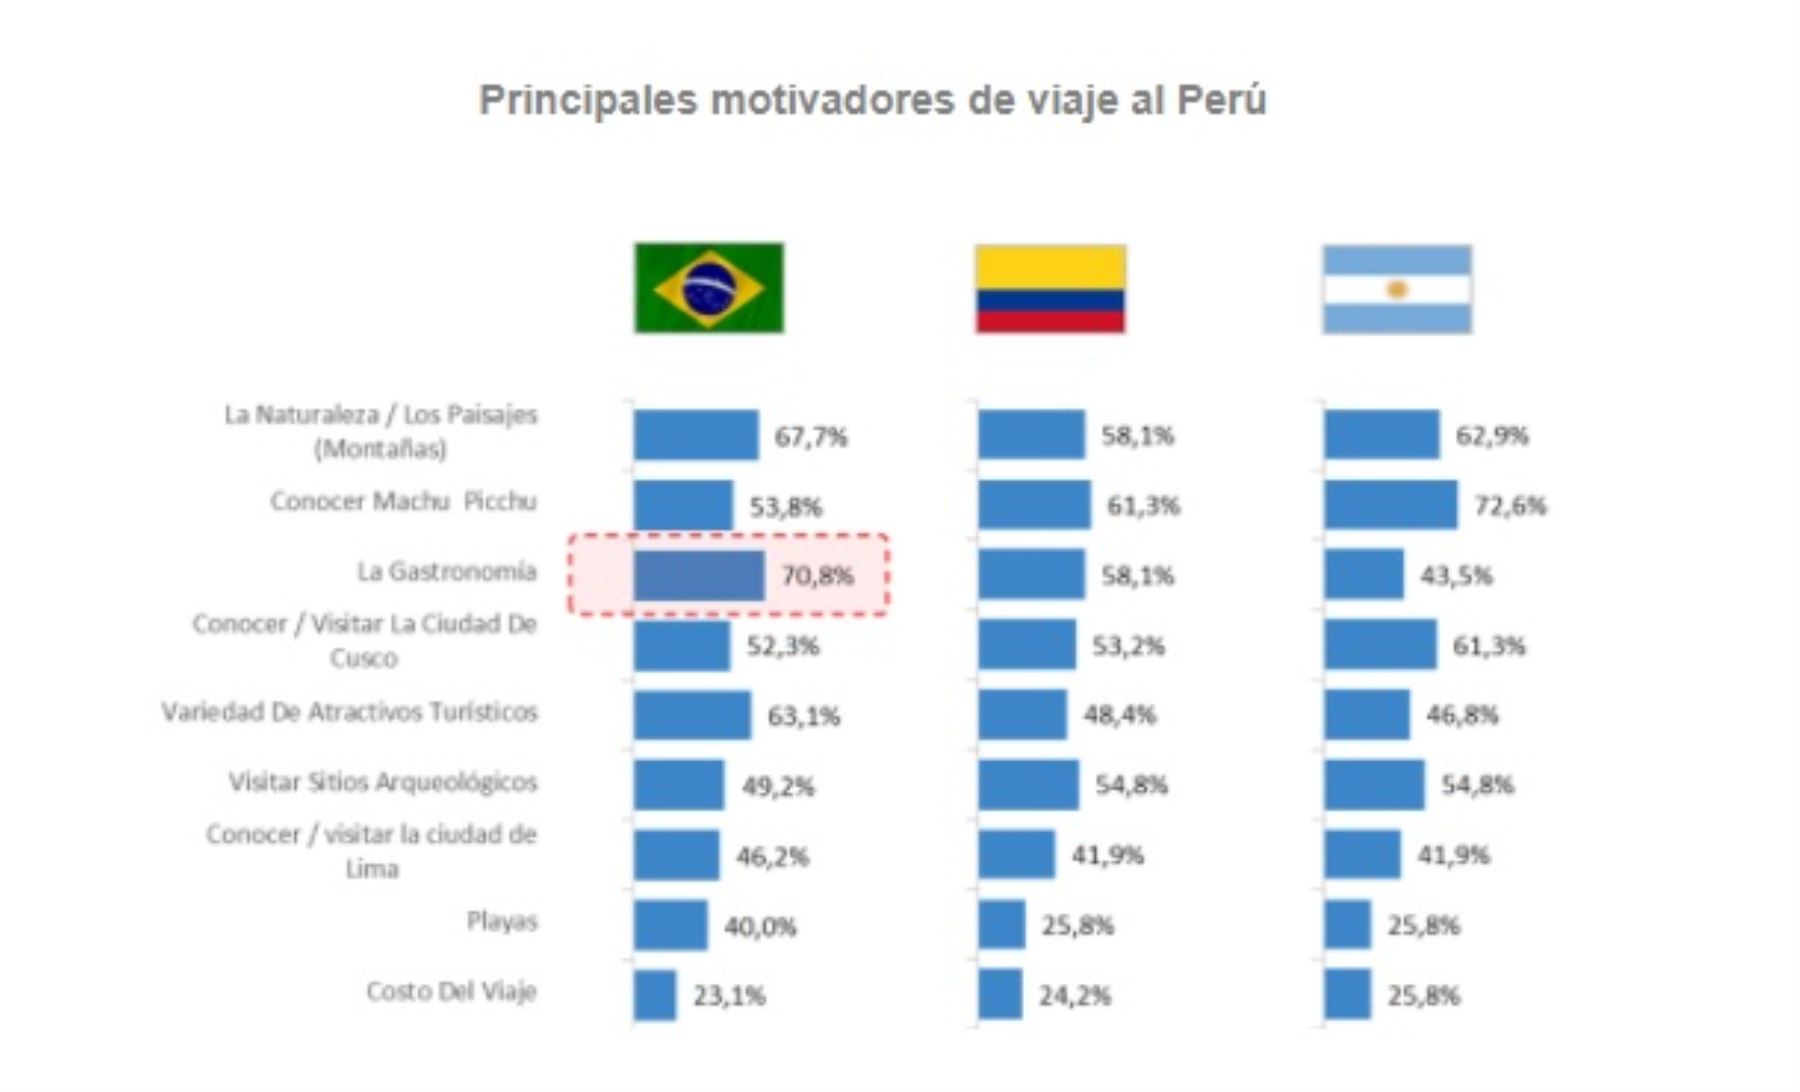 Principales motivaciones de viaje al Perú en el 2016.